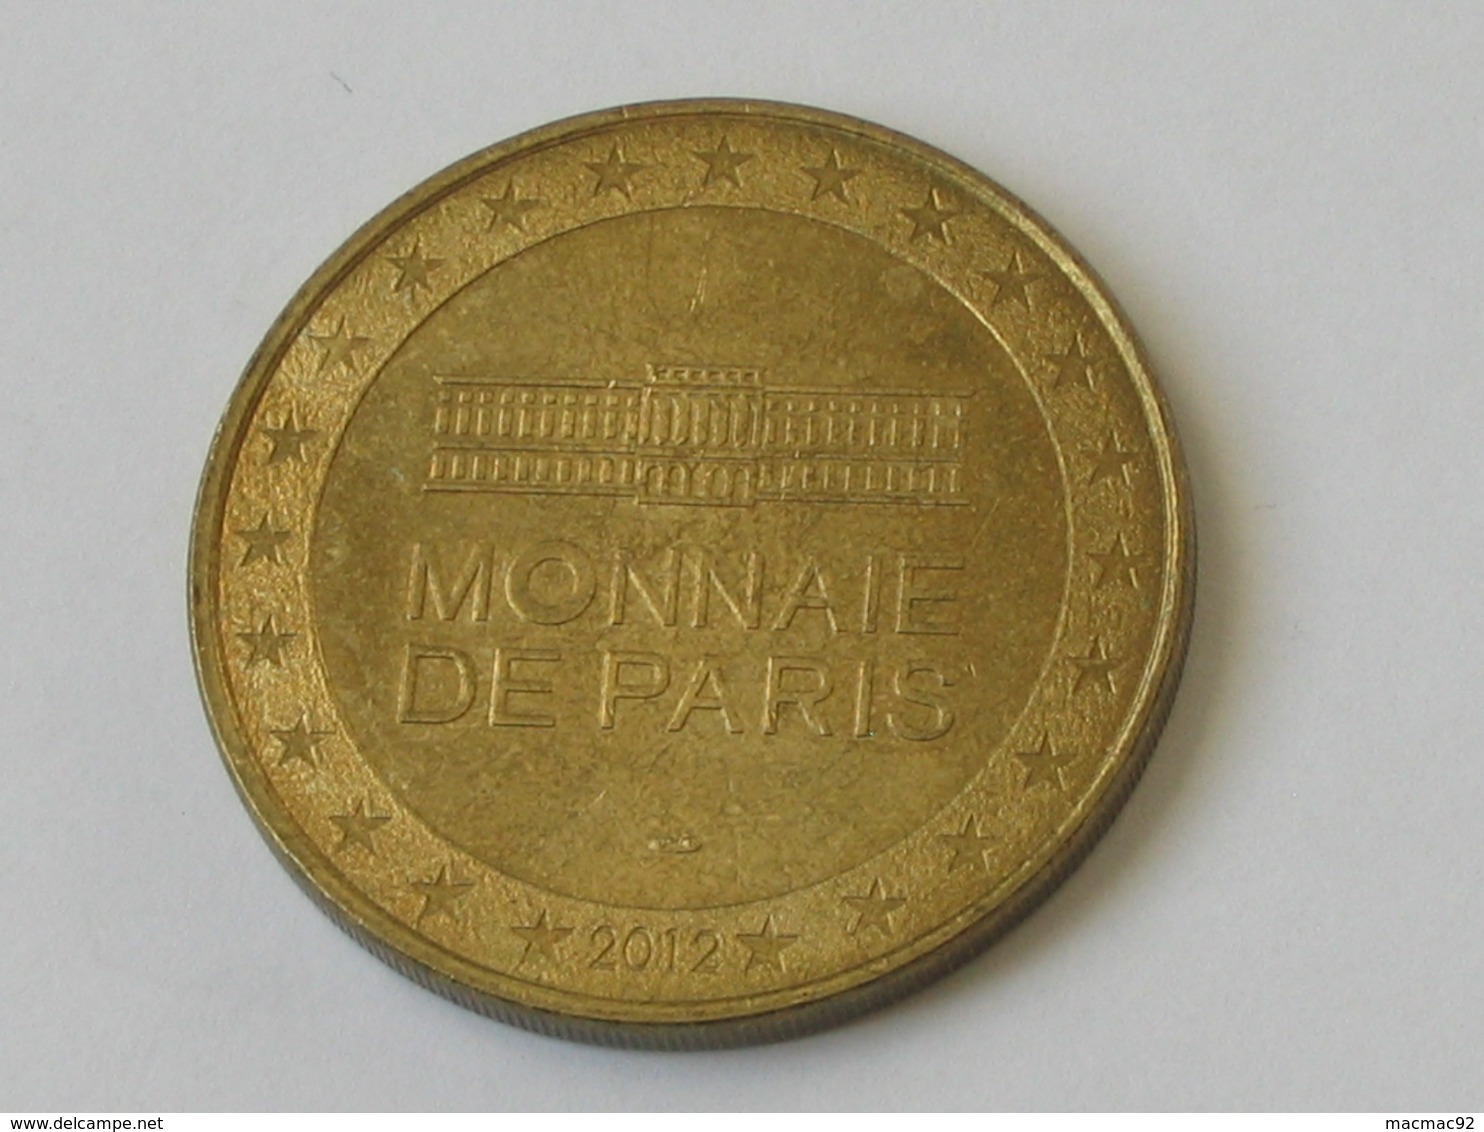 Monnaie De Paris 2012 - COLLECTIONS NAPOLÉONIENNES - VILLE D'AJACCIO   **** EN ACHAT IMMEDIAT  **** - 2012